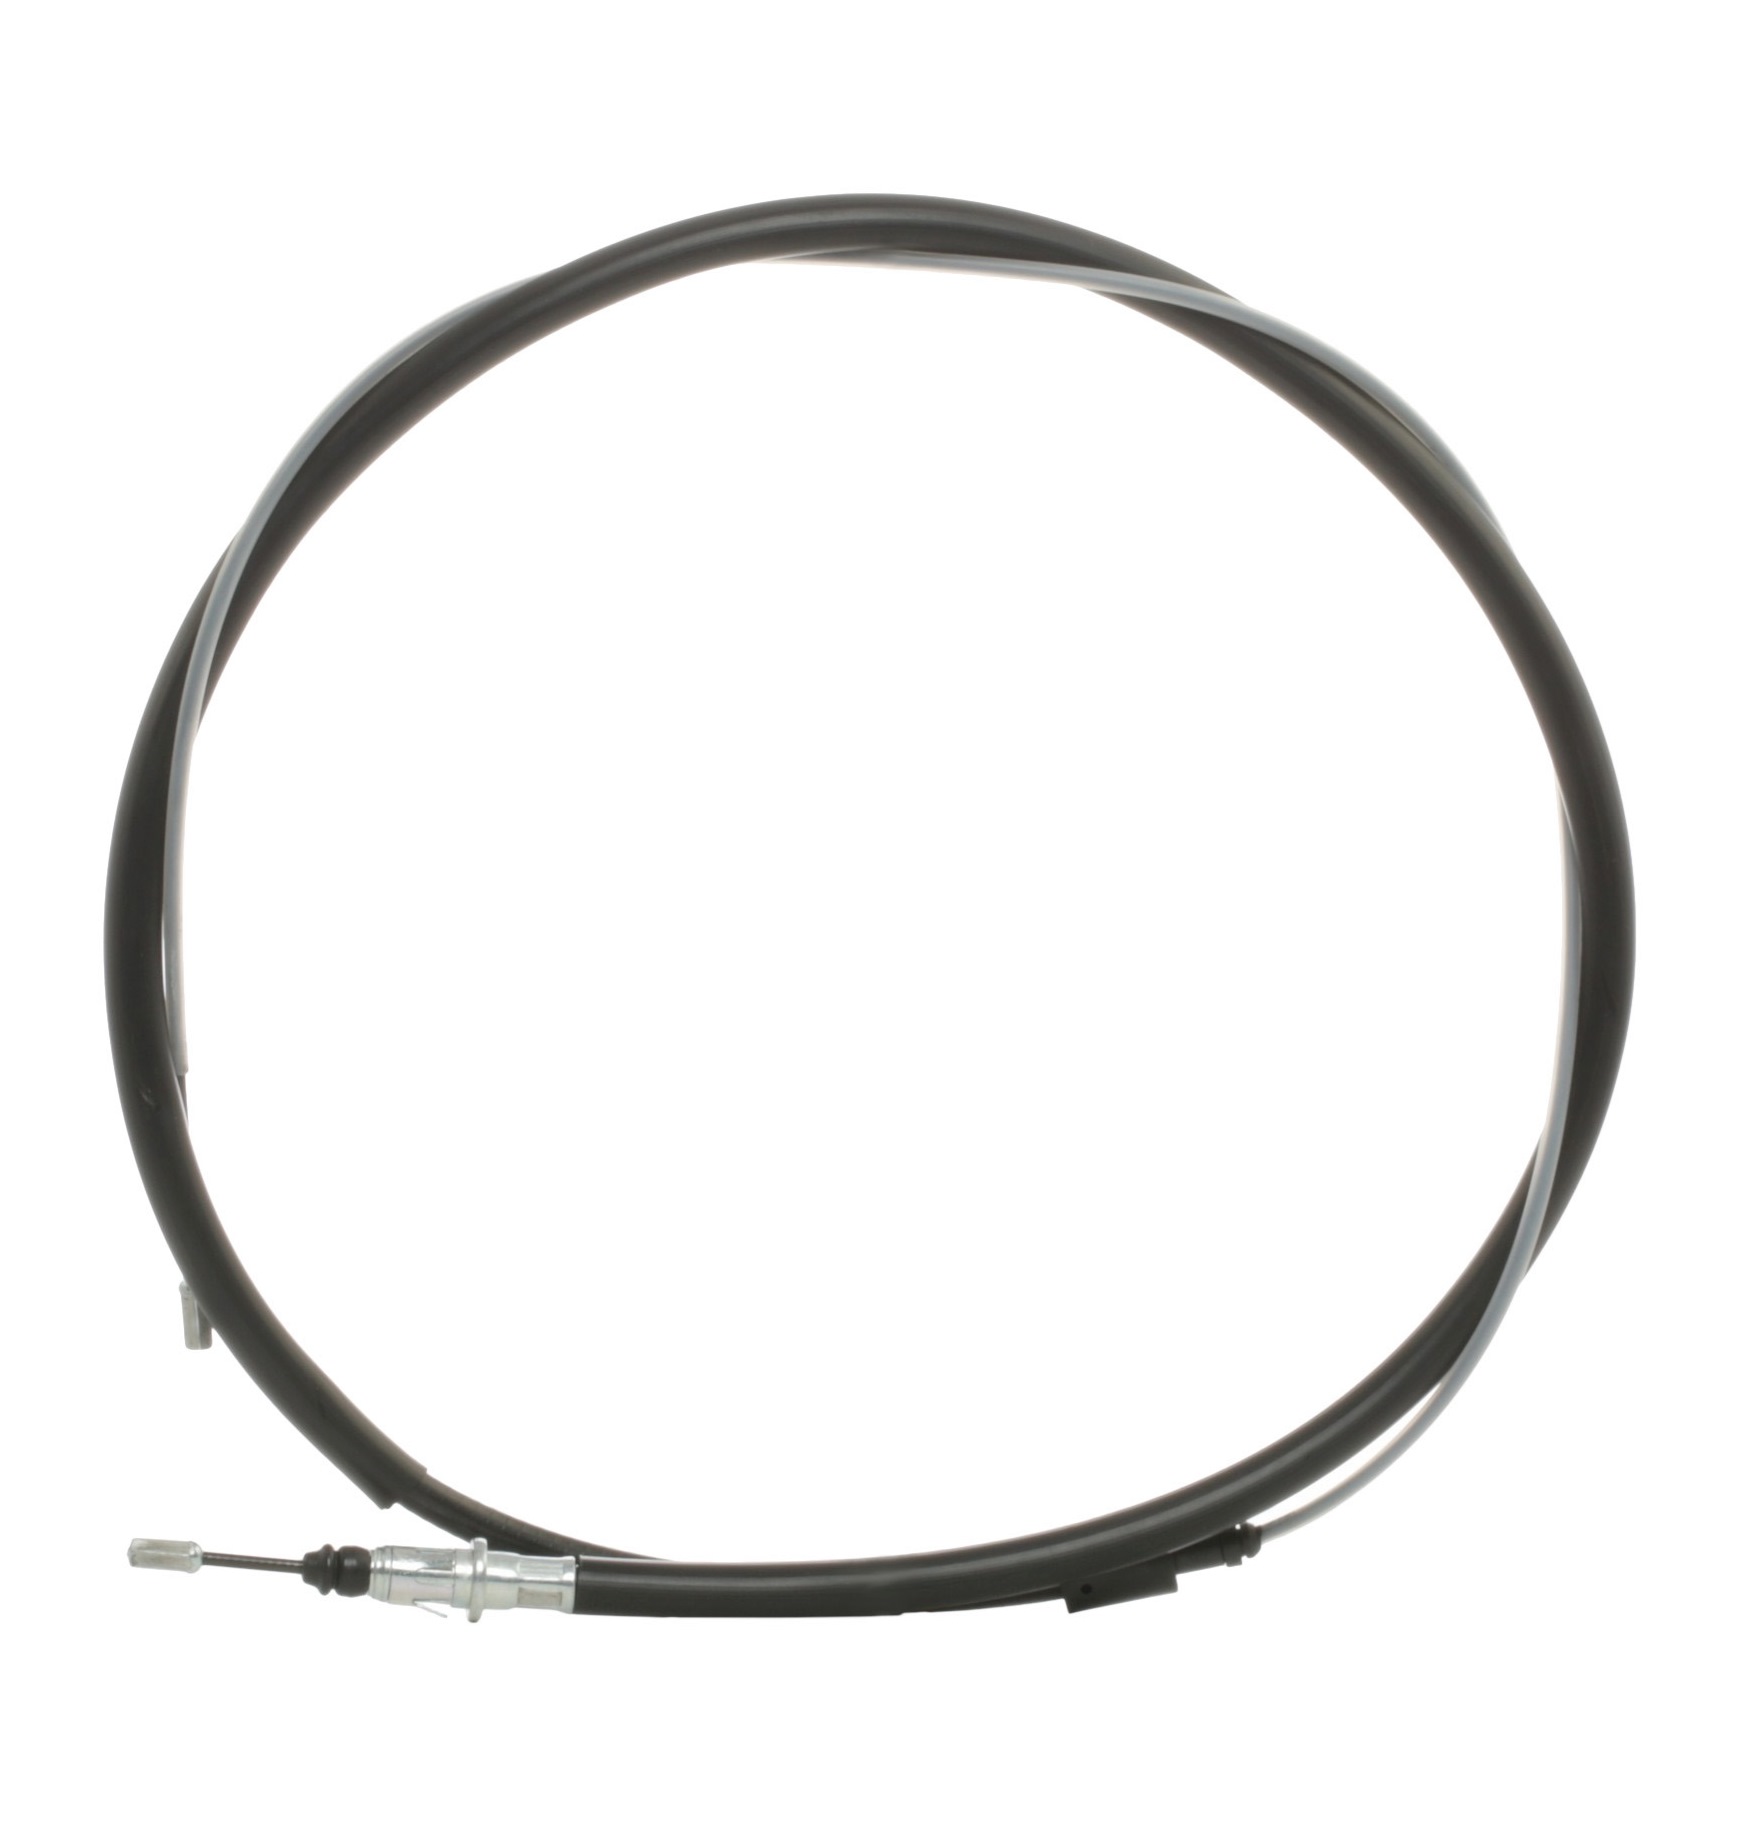 STARK SKCPB-1050068 Hand brake cable Left Rear, Right Rear, 2035/1183mm, Disc Brake